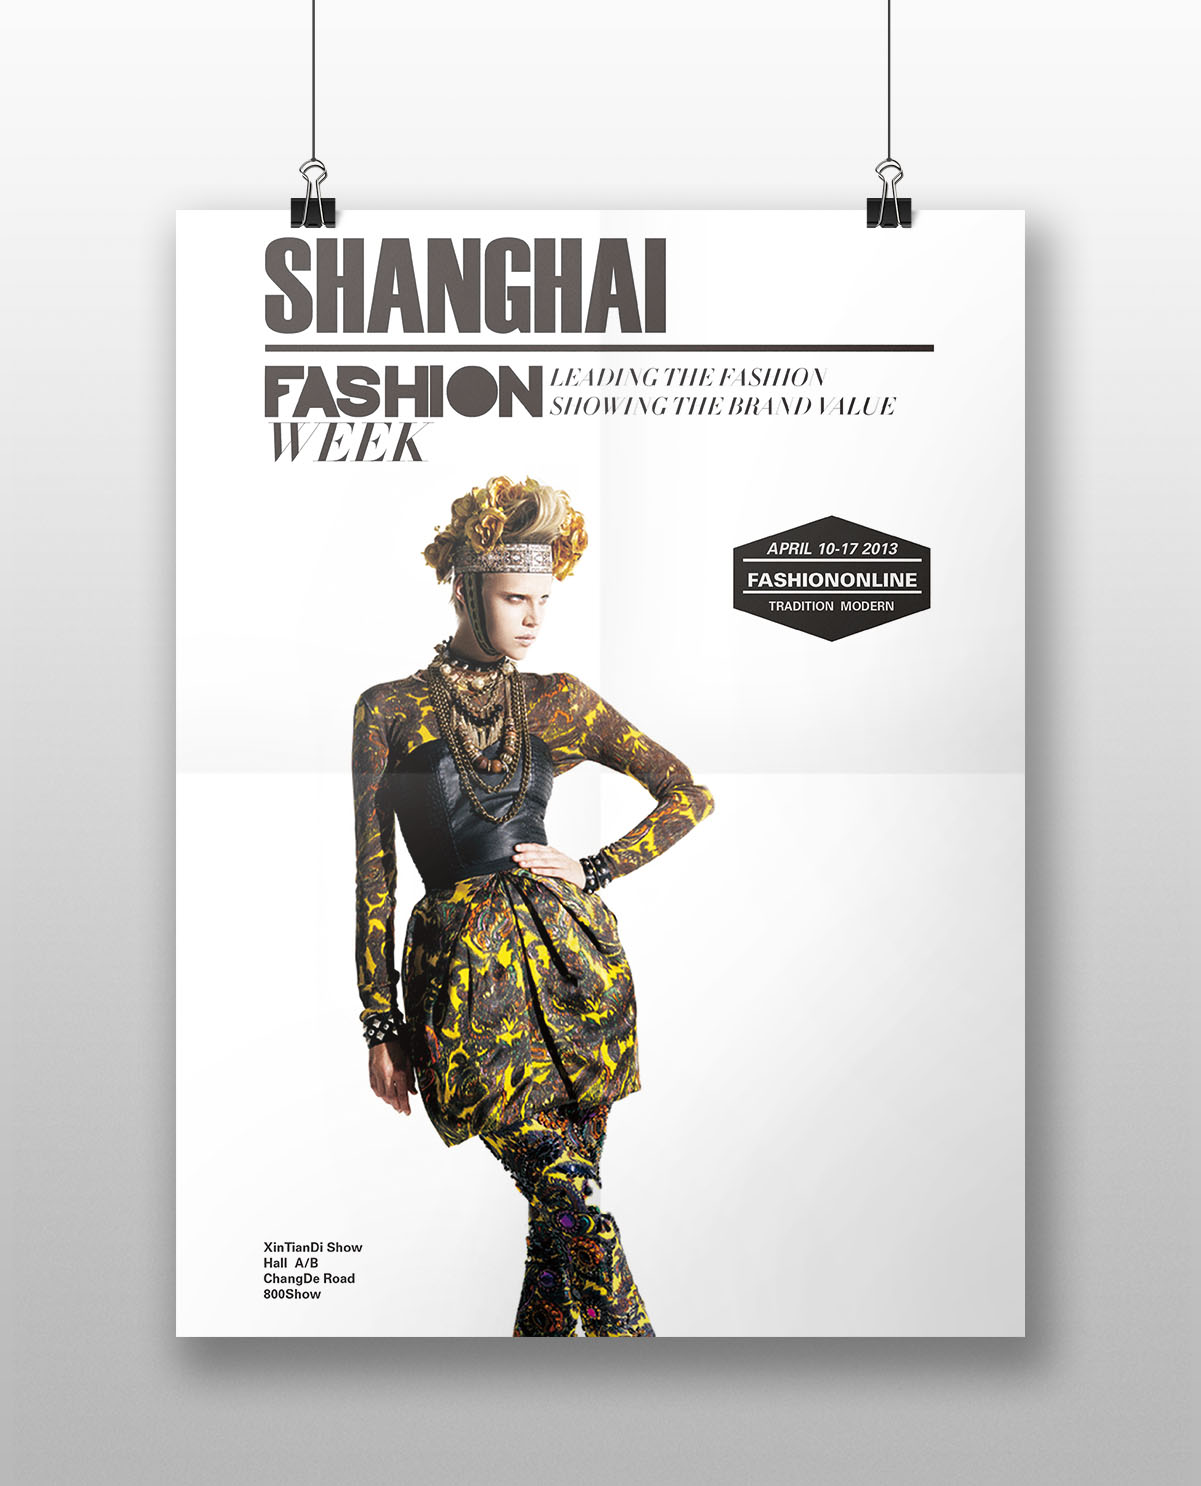 上海时装周海报图片